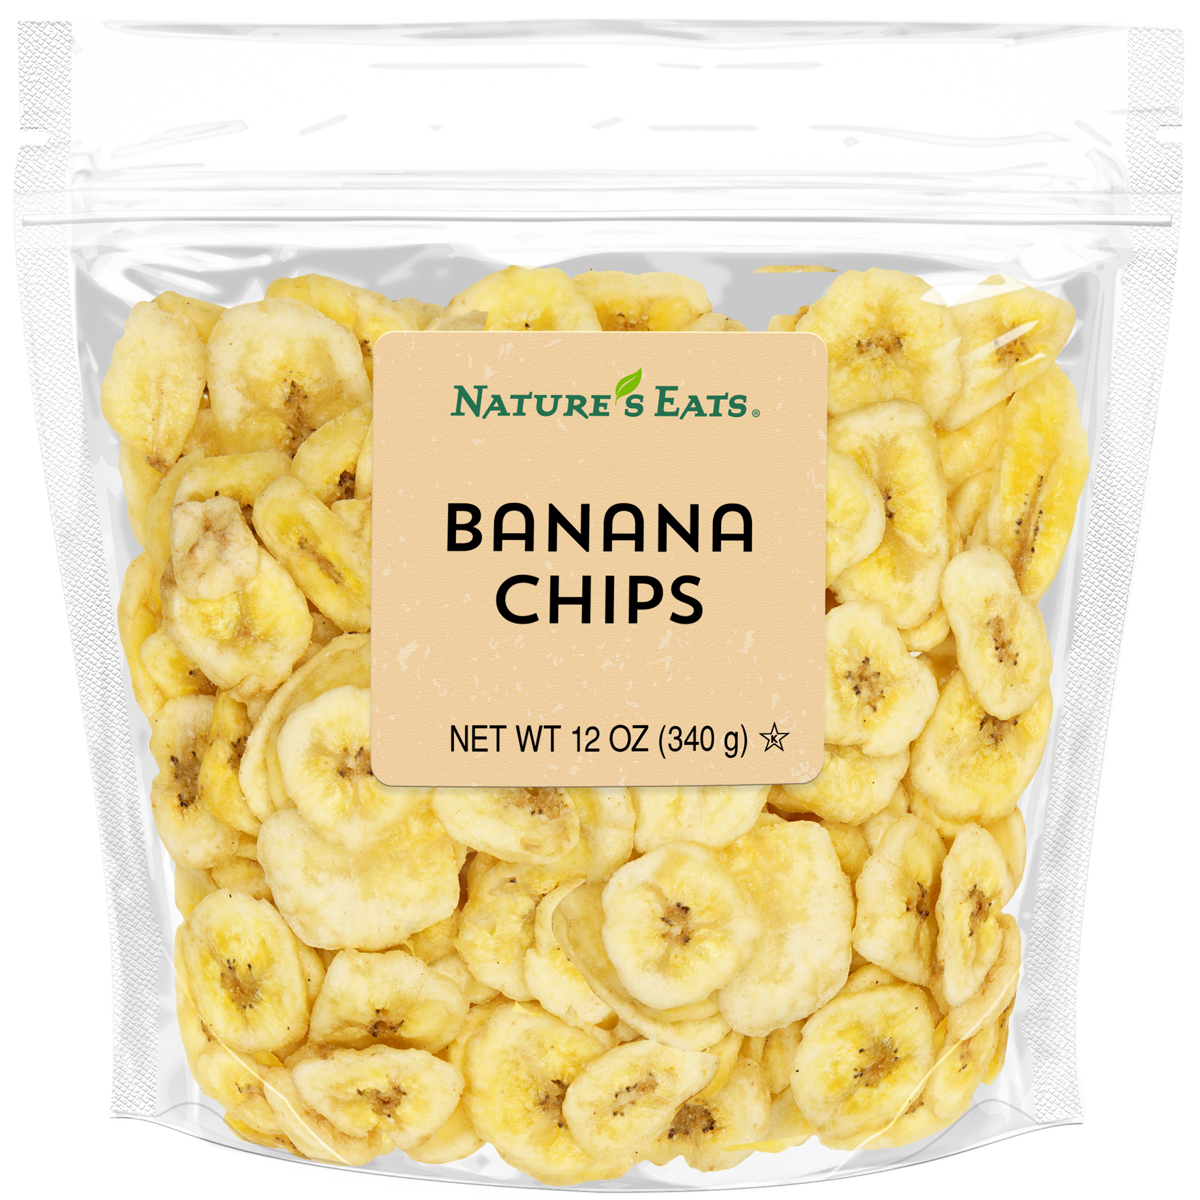 banana-chips-nep-12oz.jpg